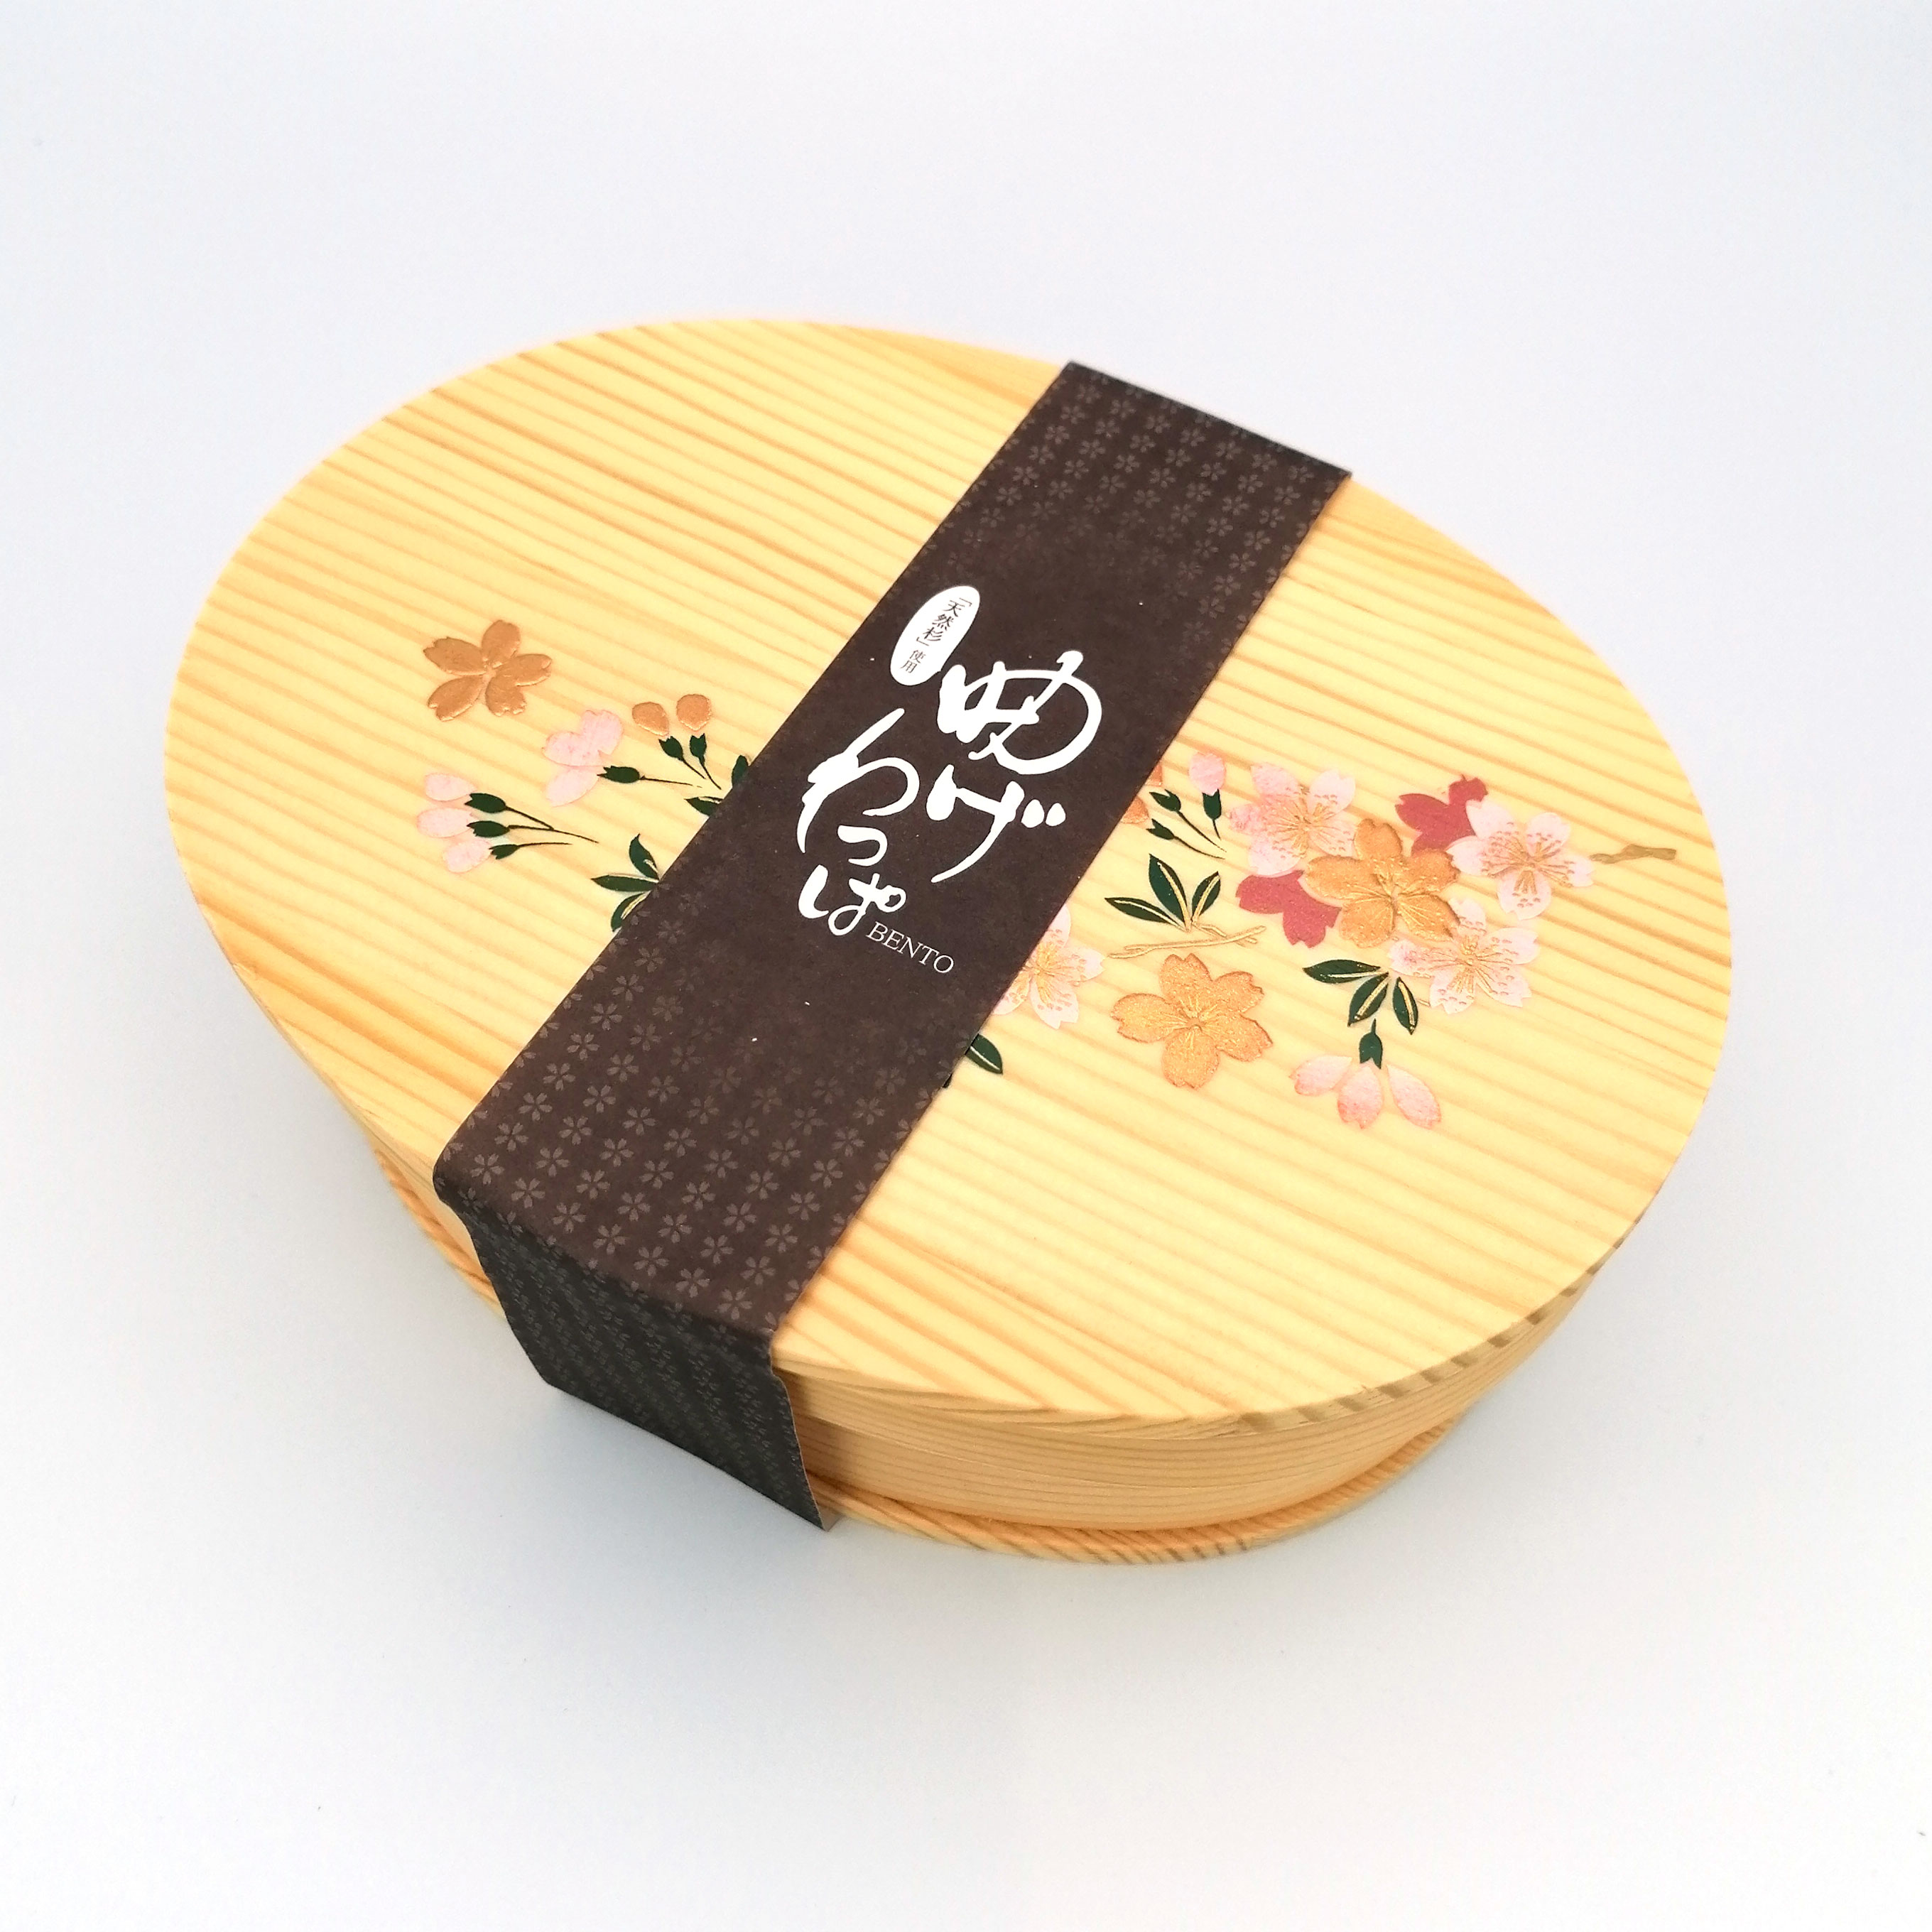 Ciotola giapponese in legno, fiori di ciliegio - SAKURA NO HANA